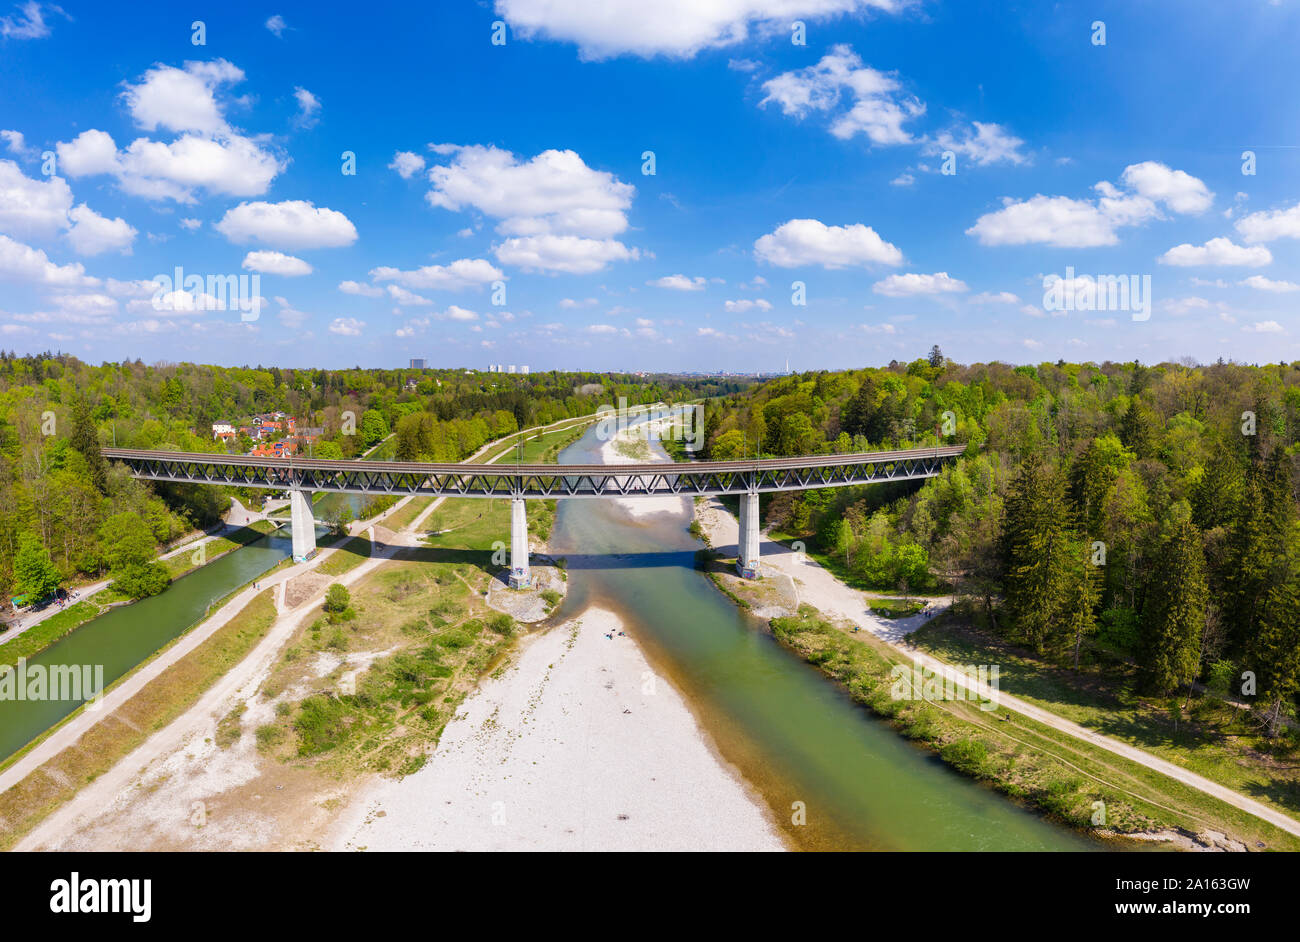 L'Allemagne, la Haute-Bavière, Grosshesseloher pont traversant la rivière Isar, dans la vallée de l'Isar Banque D'Images